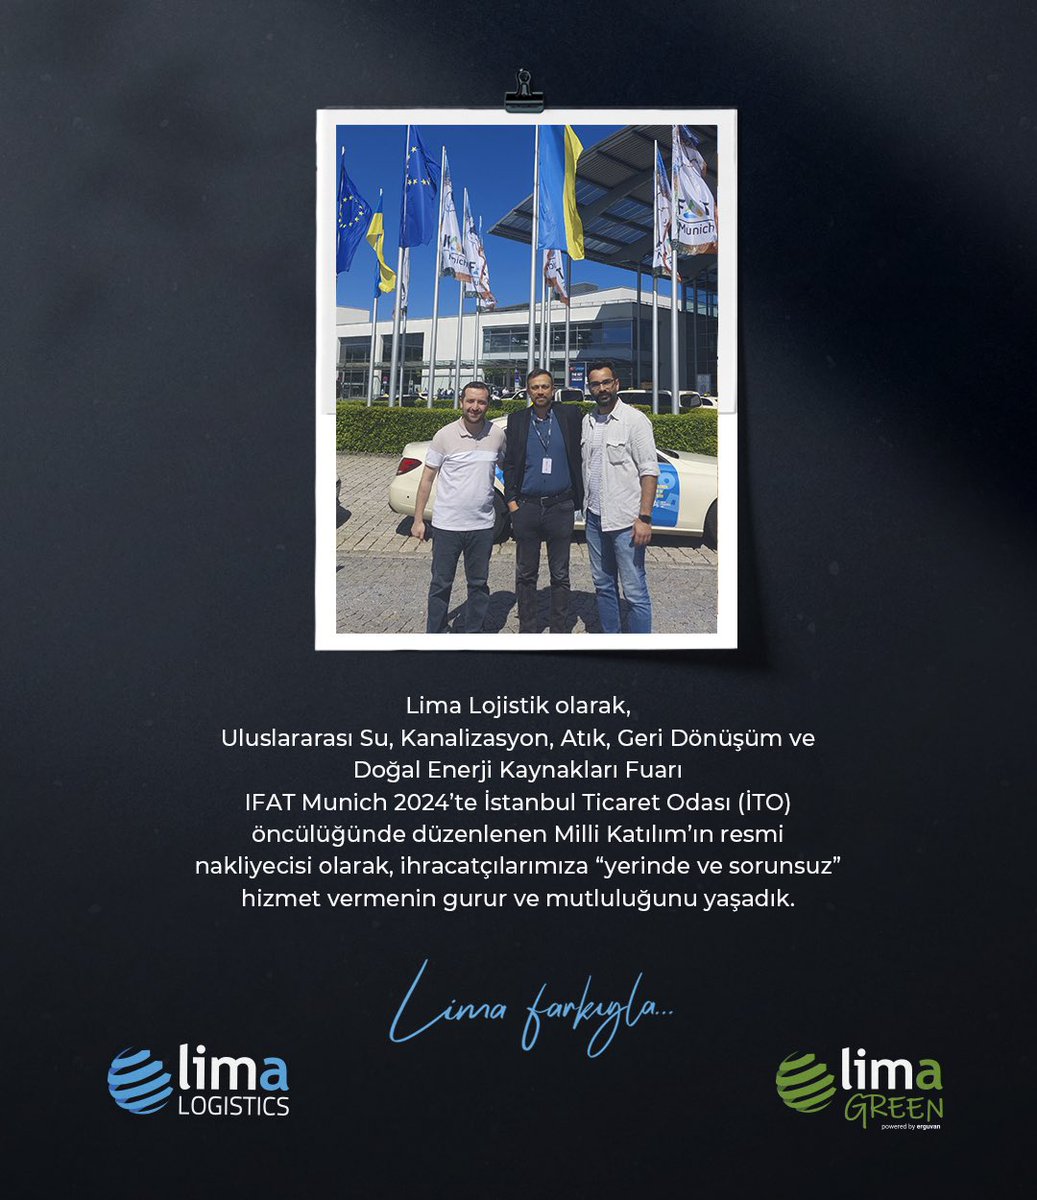 Lima Lojistik olarak,IFAT Munich 2024’te İstanbul Ticaret Odası (İTO) öncülüğünde düzenlenen Milli Katılım’ın resmi nakliyecisi olarak, ihracatçılarımıza “yerinde ve sorunsuz” hizmet vermenin gurur ve mutluluğunu yaşadık.💫
.
.
.
#limalojistik #limalogistics #limagreen